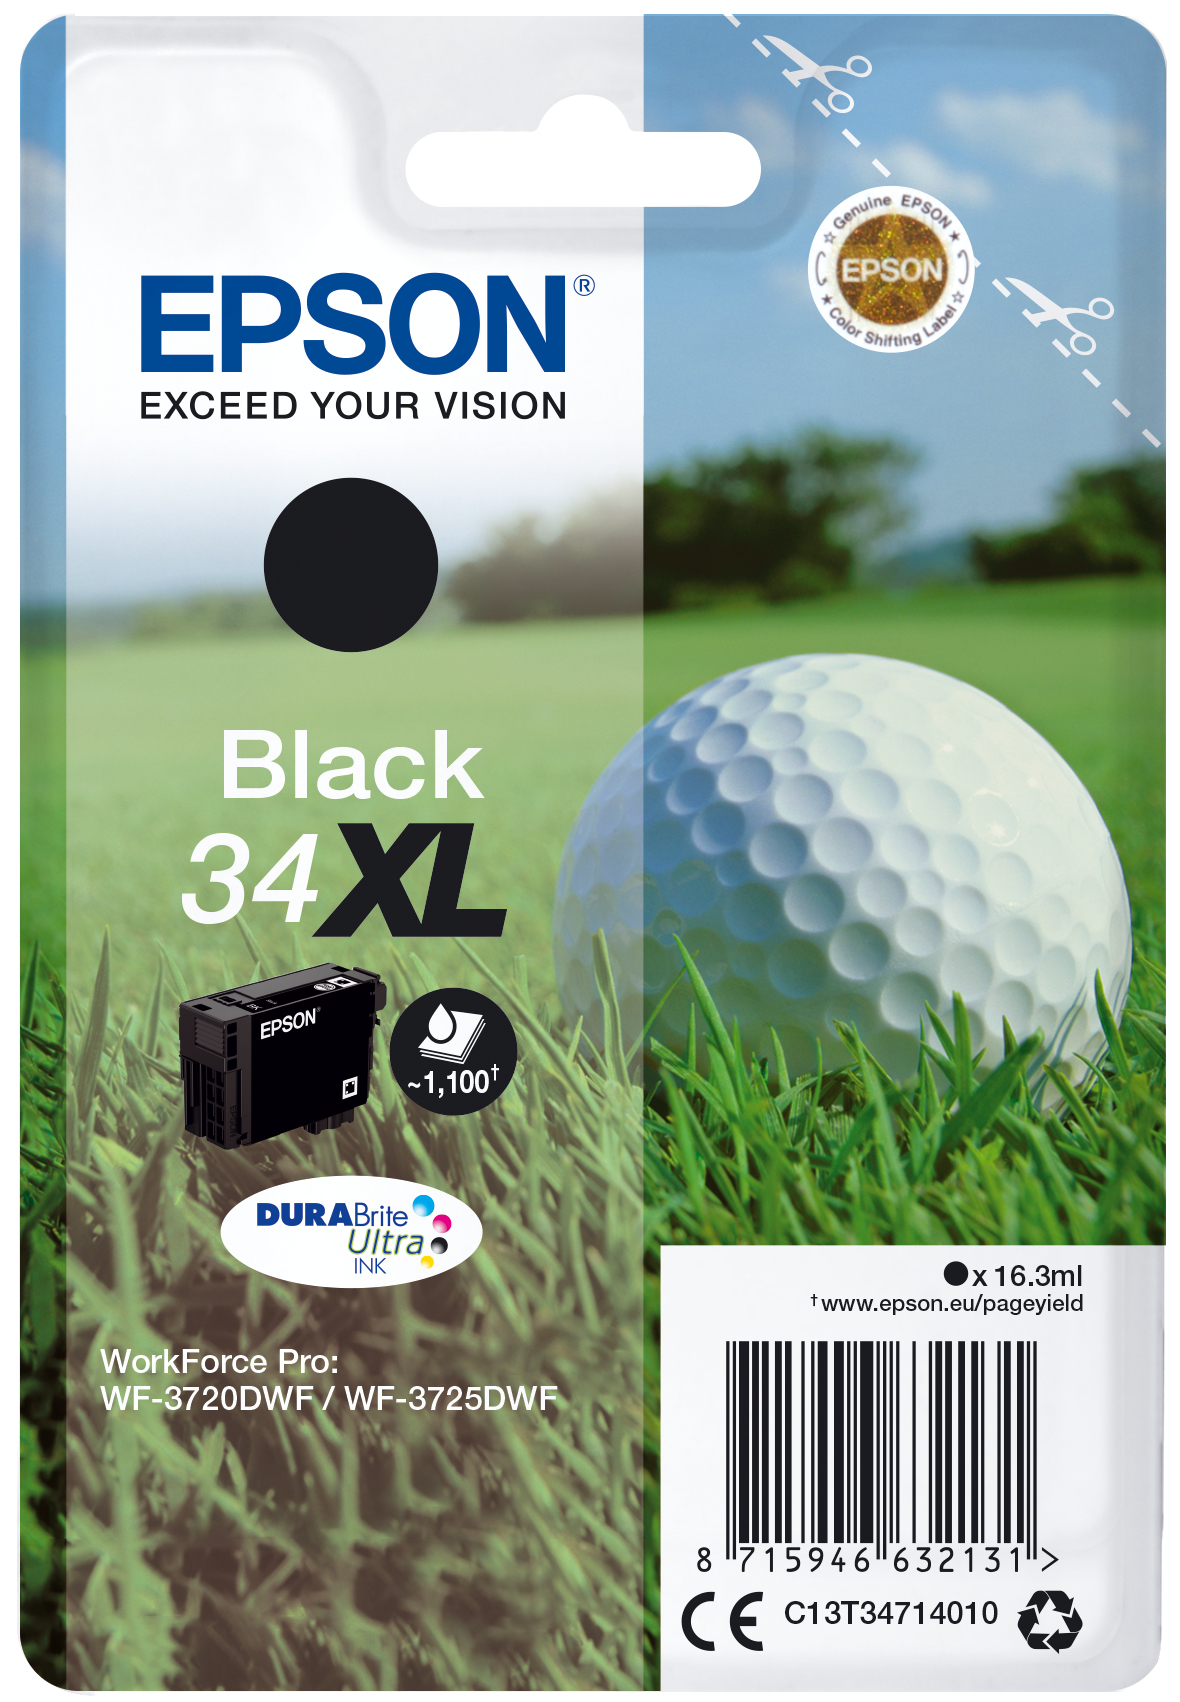 Singlepack Black 34xl Epson Consumer Ink S1 C13t34714010 8715946632131